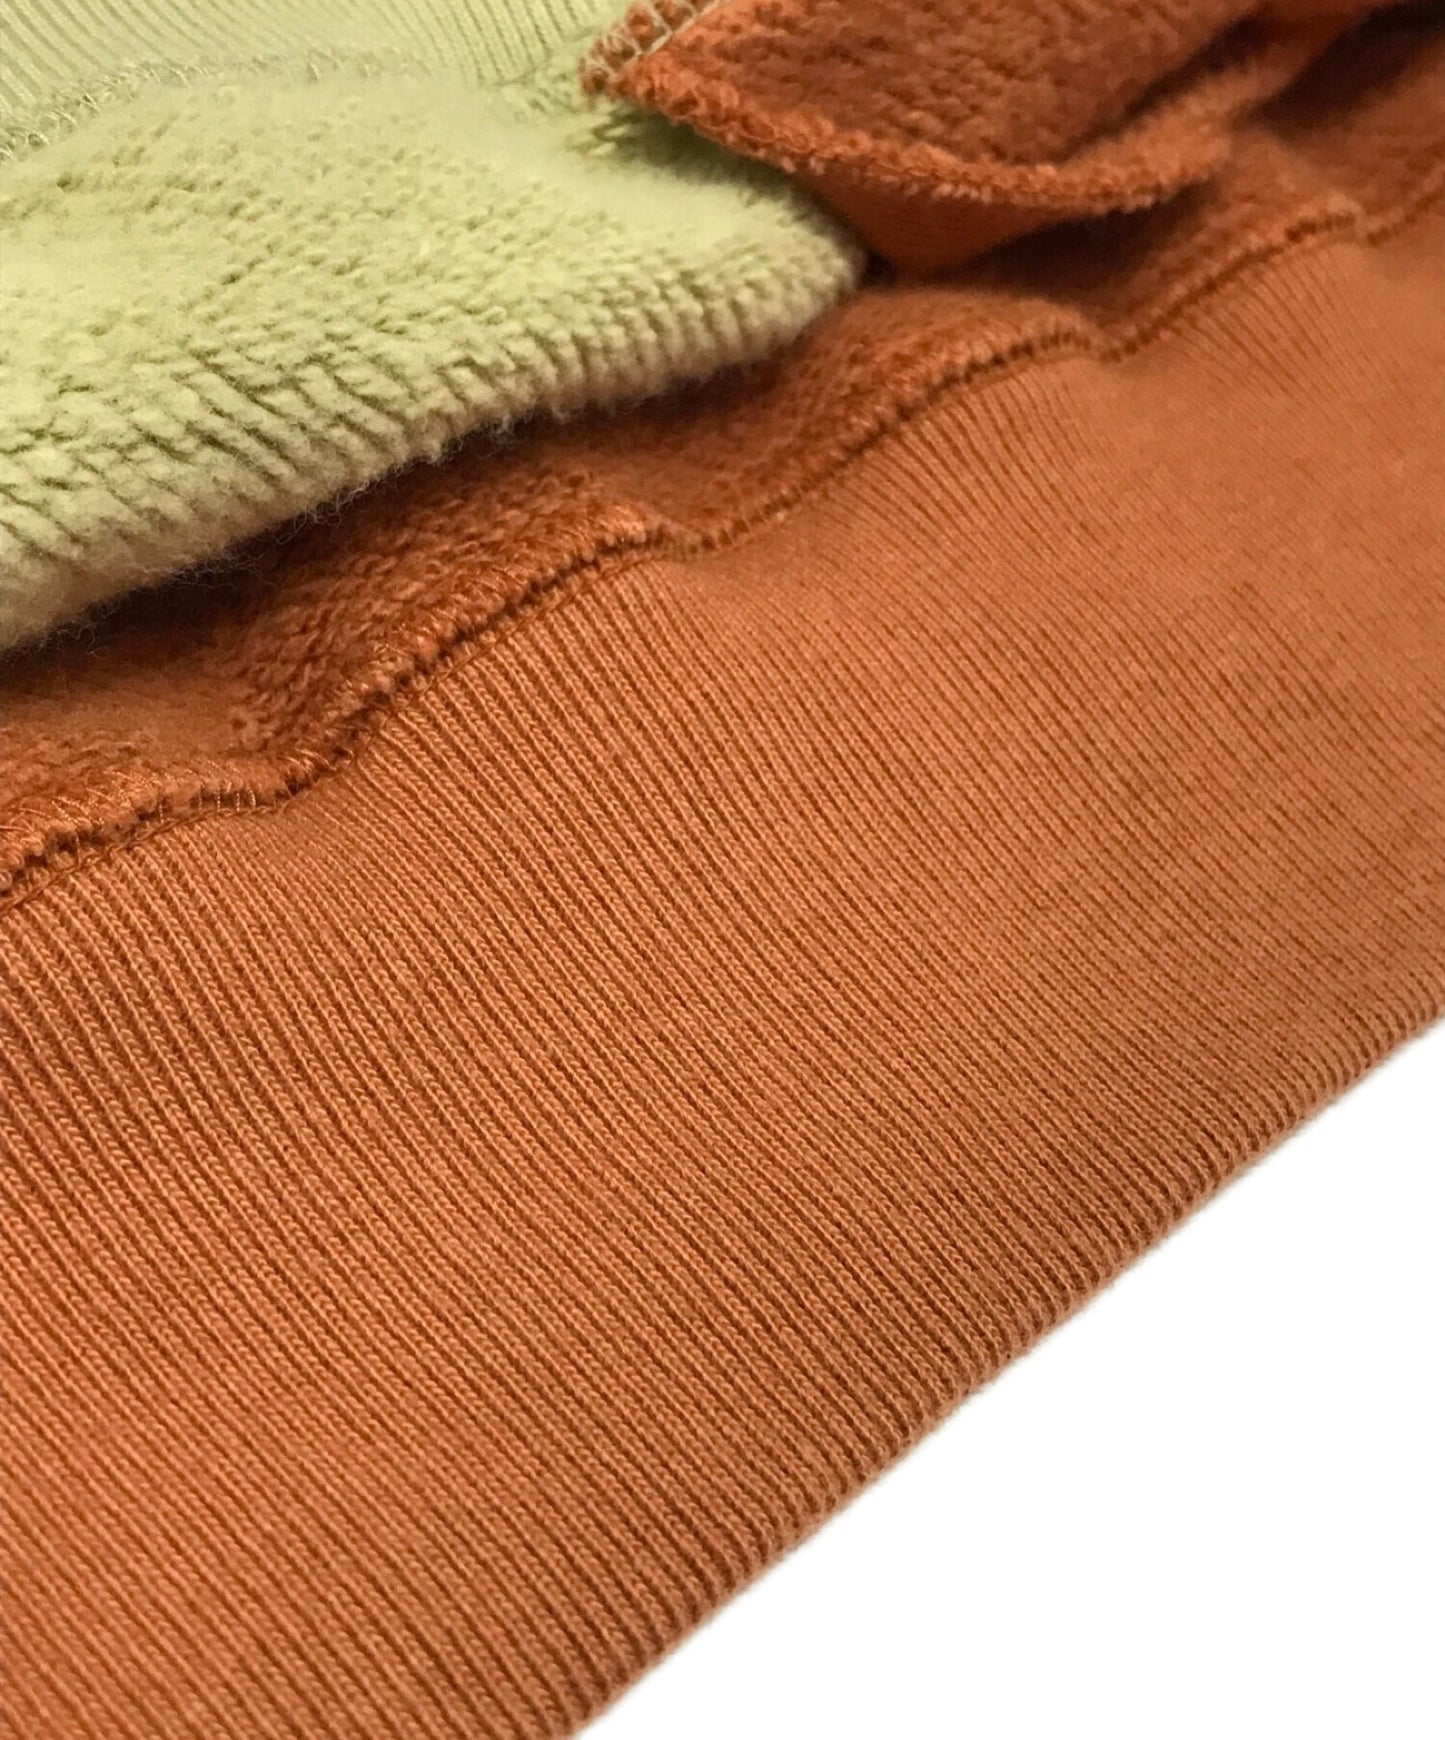 臥底發條橙色的高領衫印刷運動衫UCX4805-1